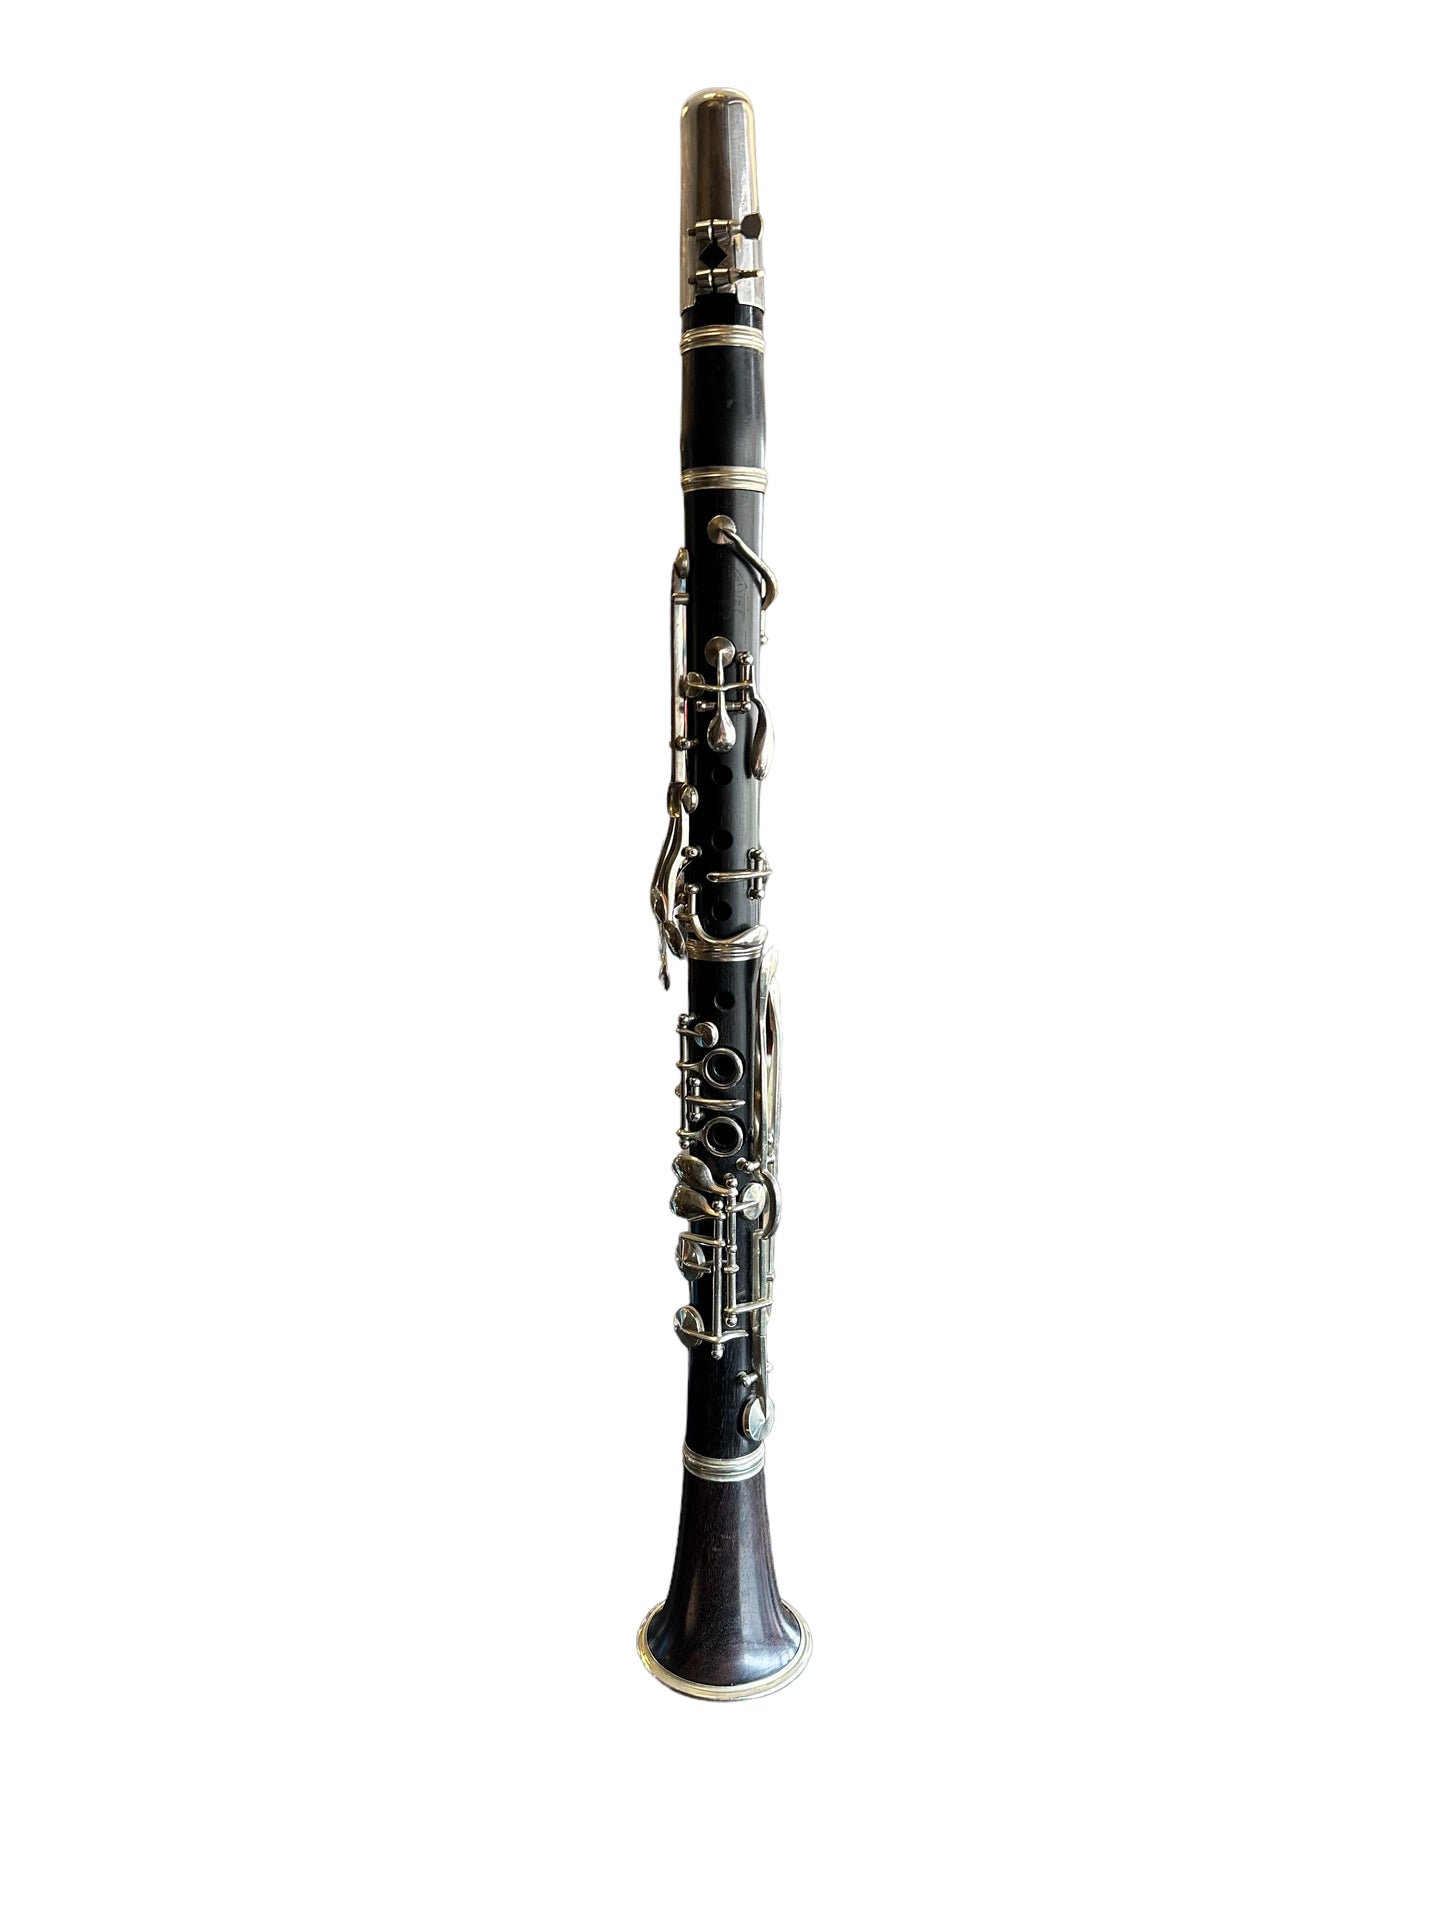 Vintage Wood Clarinet